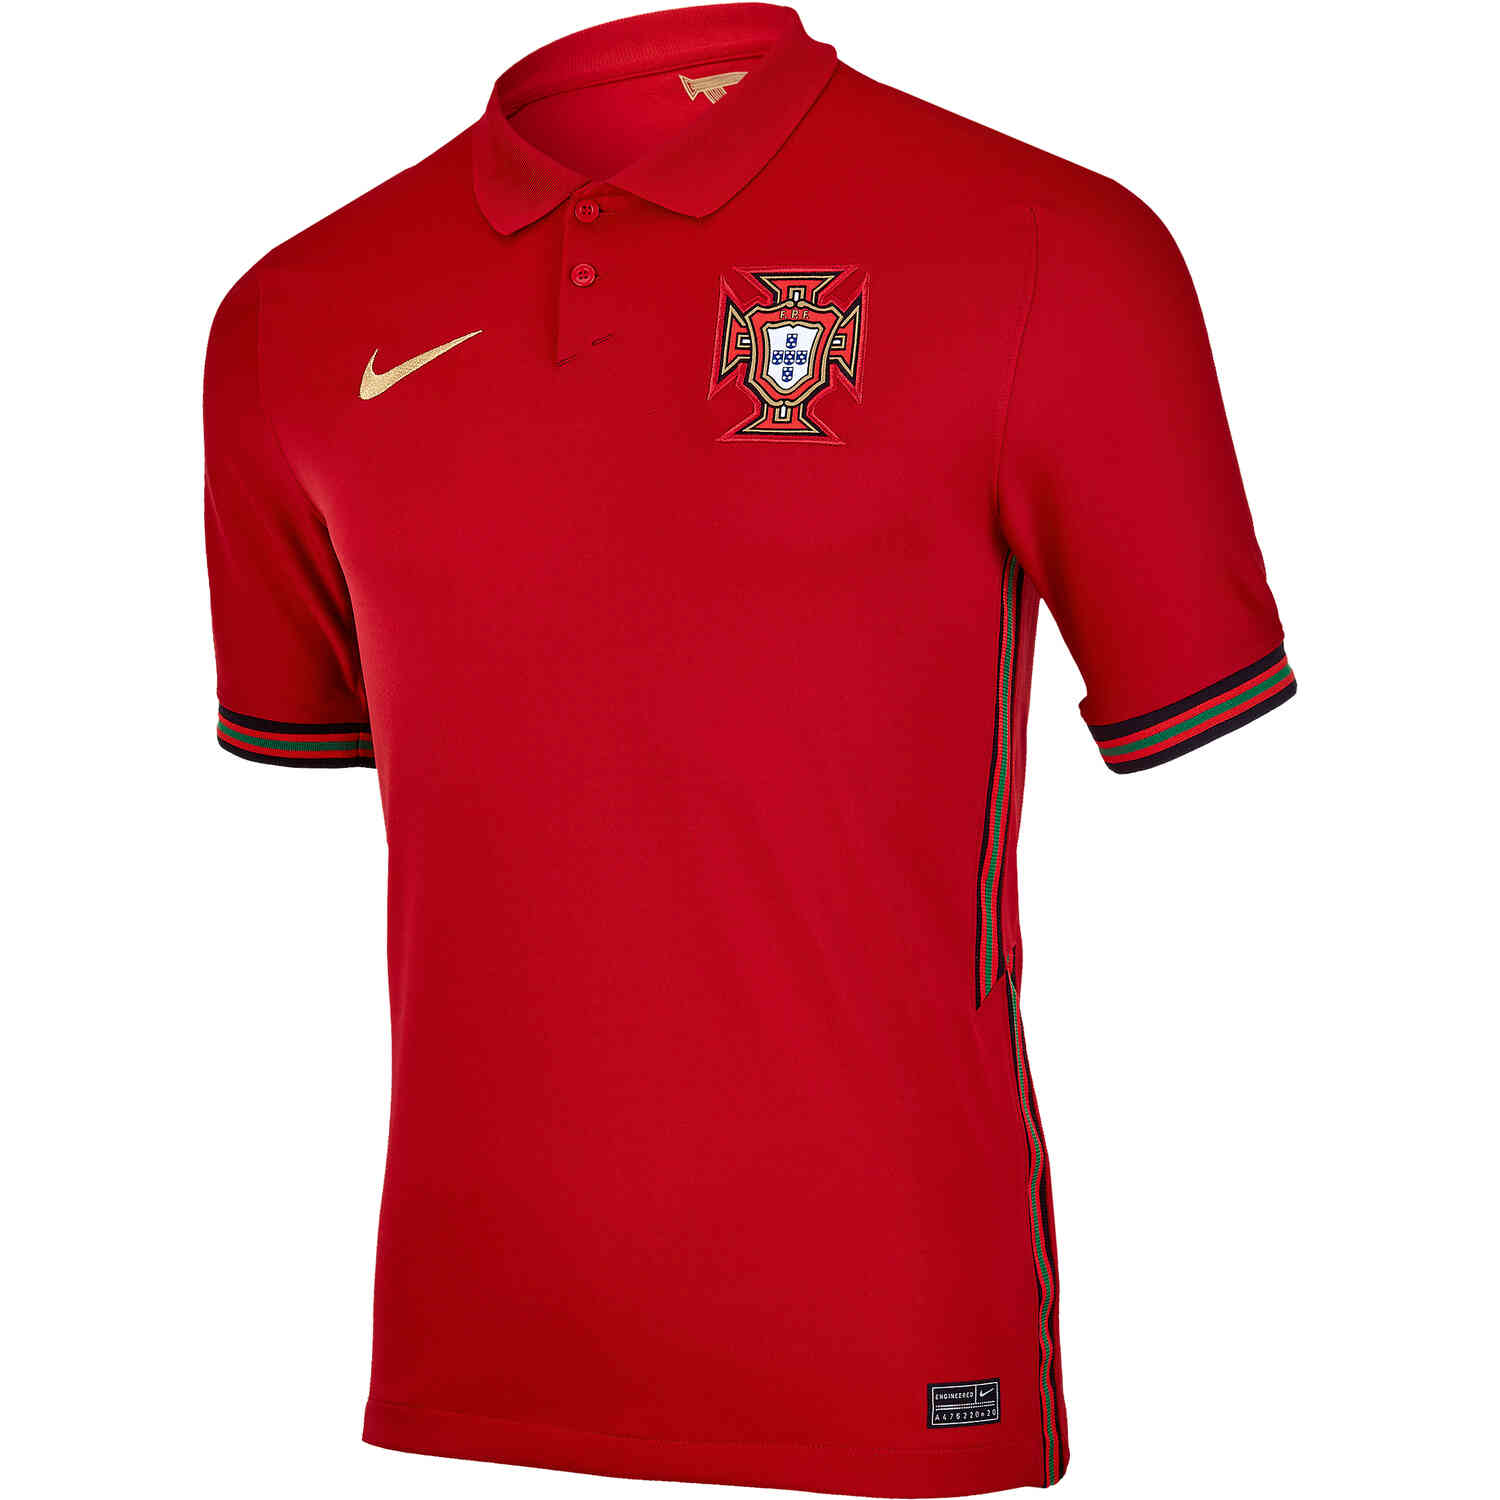 2020 Nike Portugal Home Jersey - SoccerPro